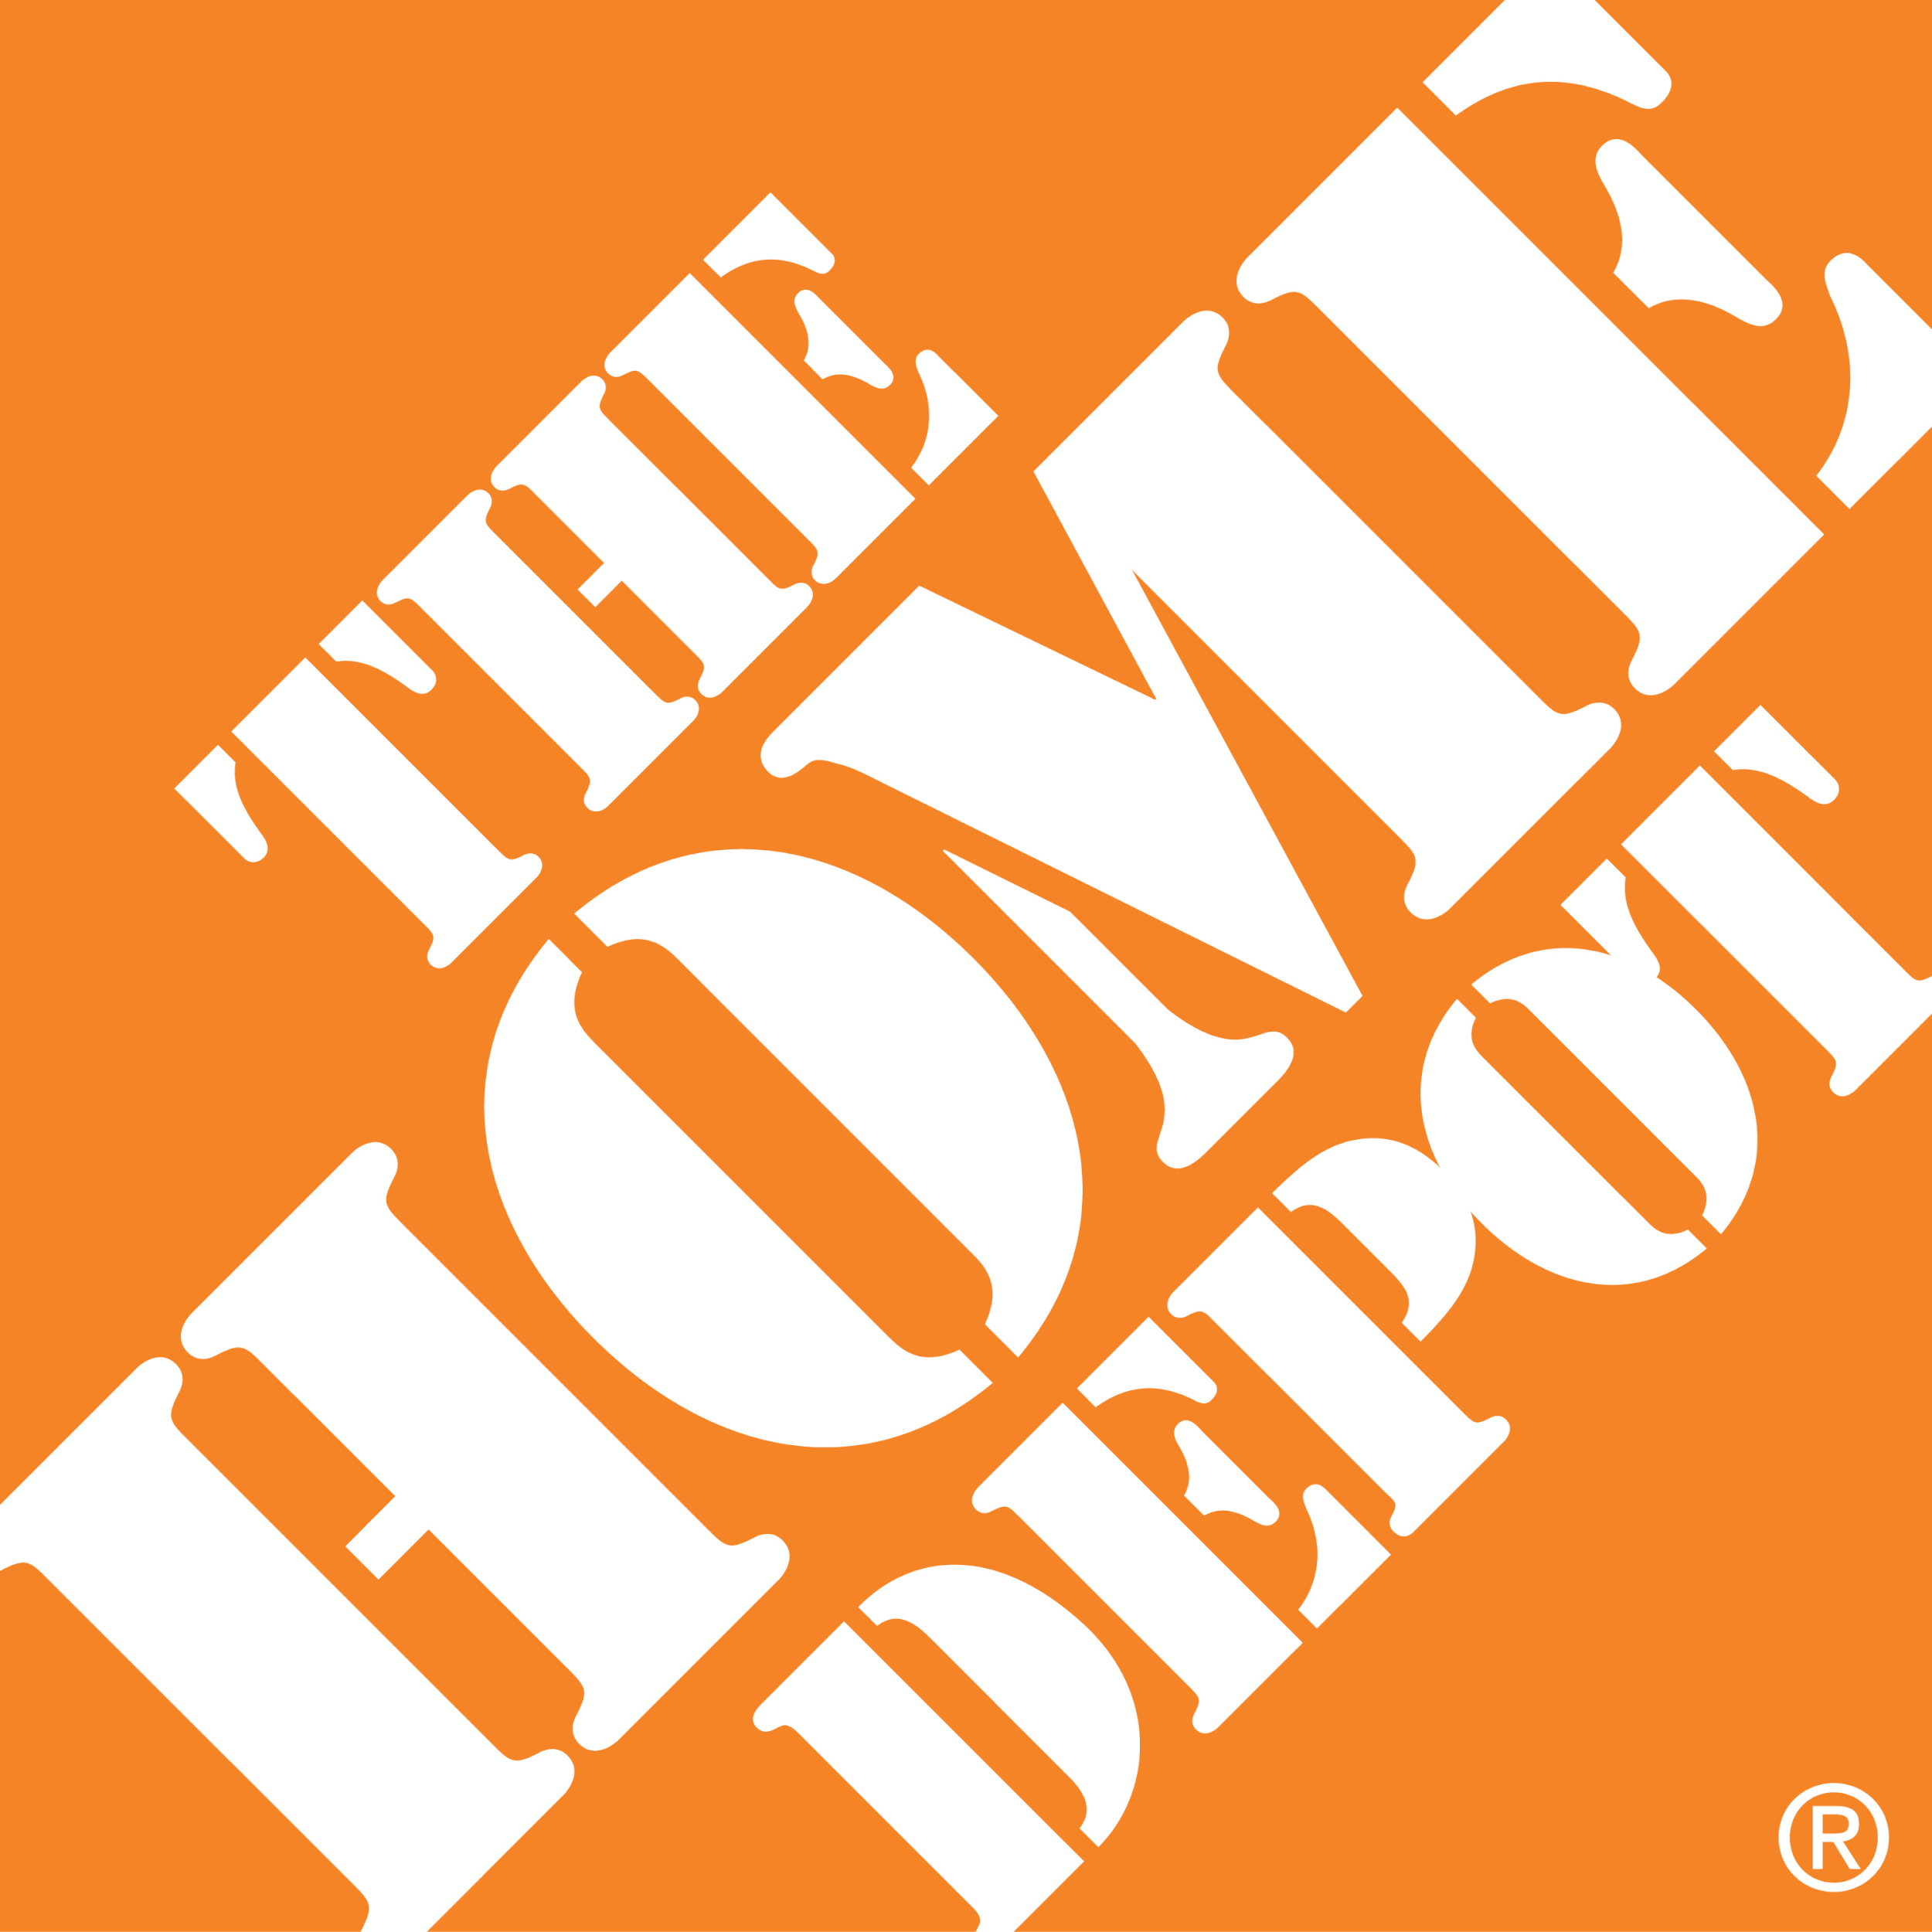 home-depot-logo-clipart-1.jpg